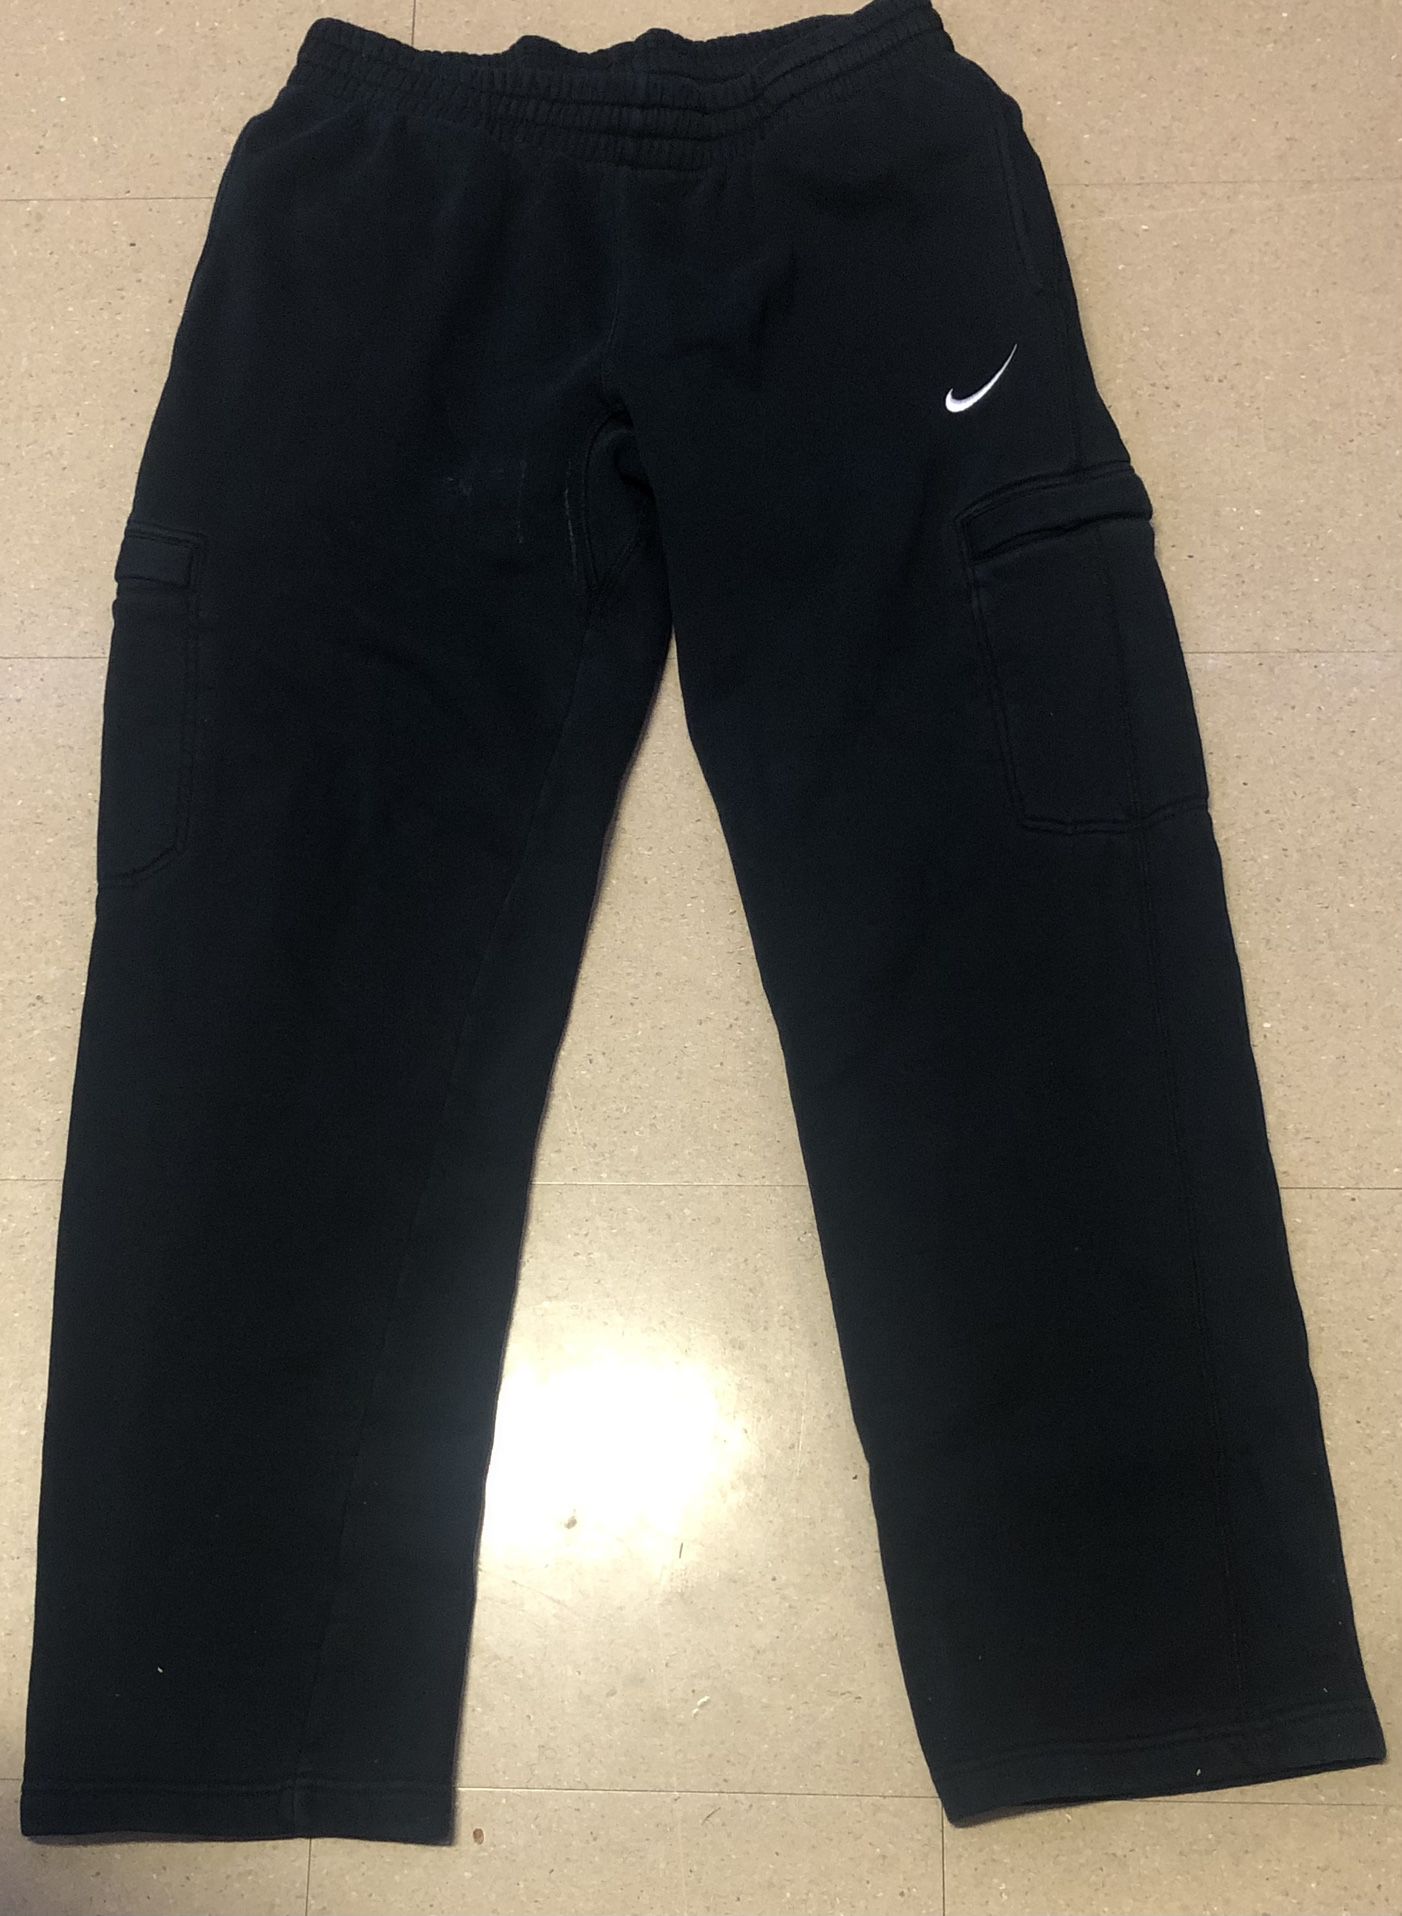 Black Nike Sweat Pants (size L)